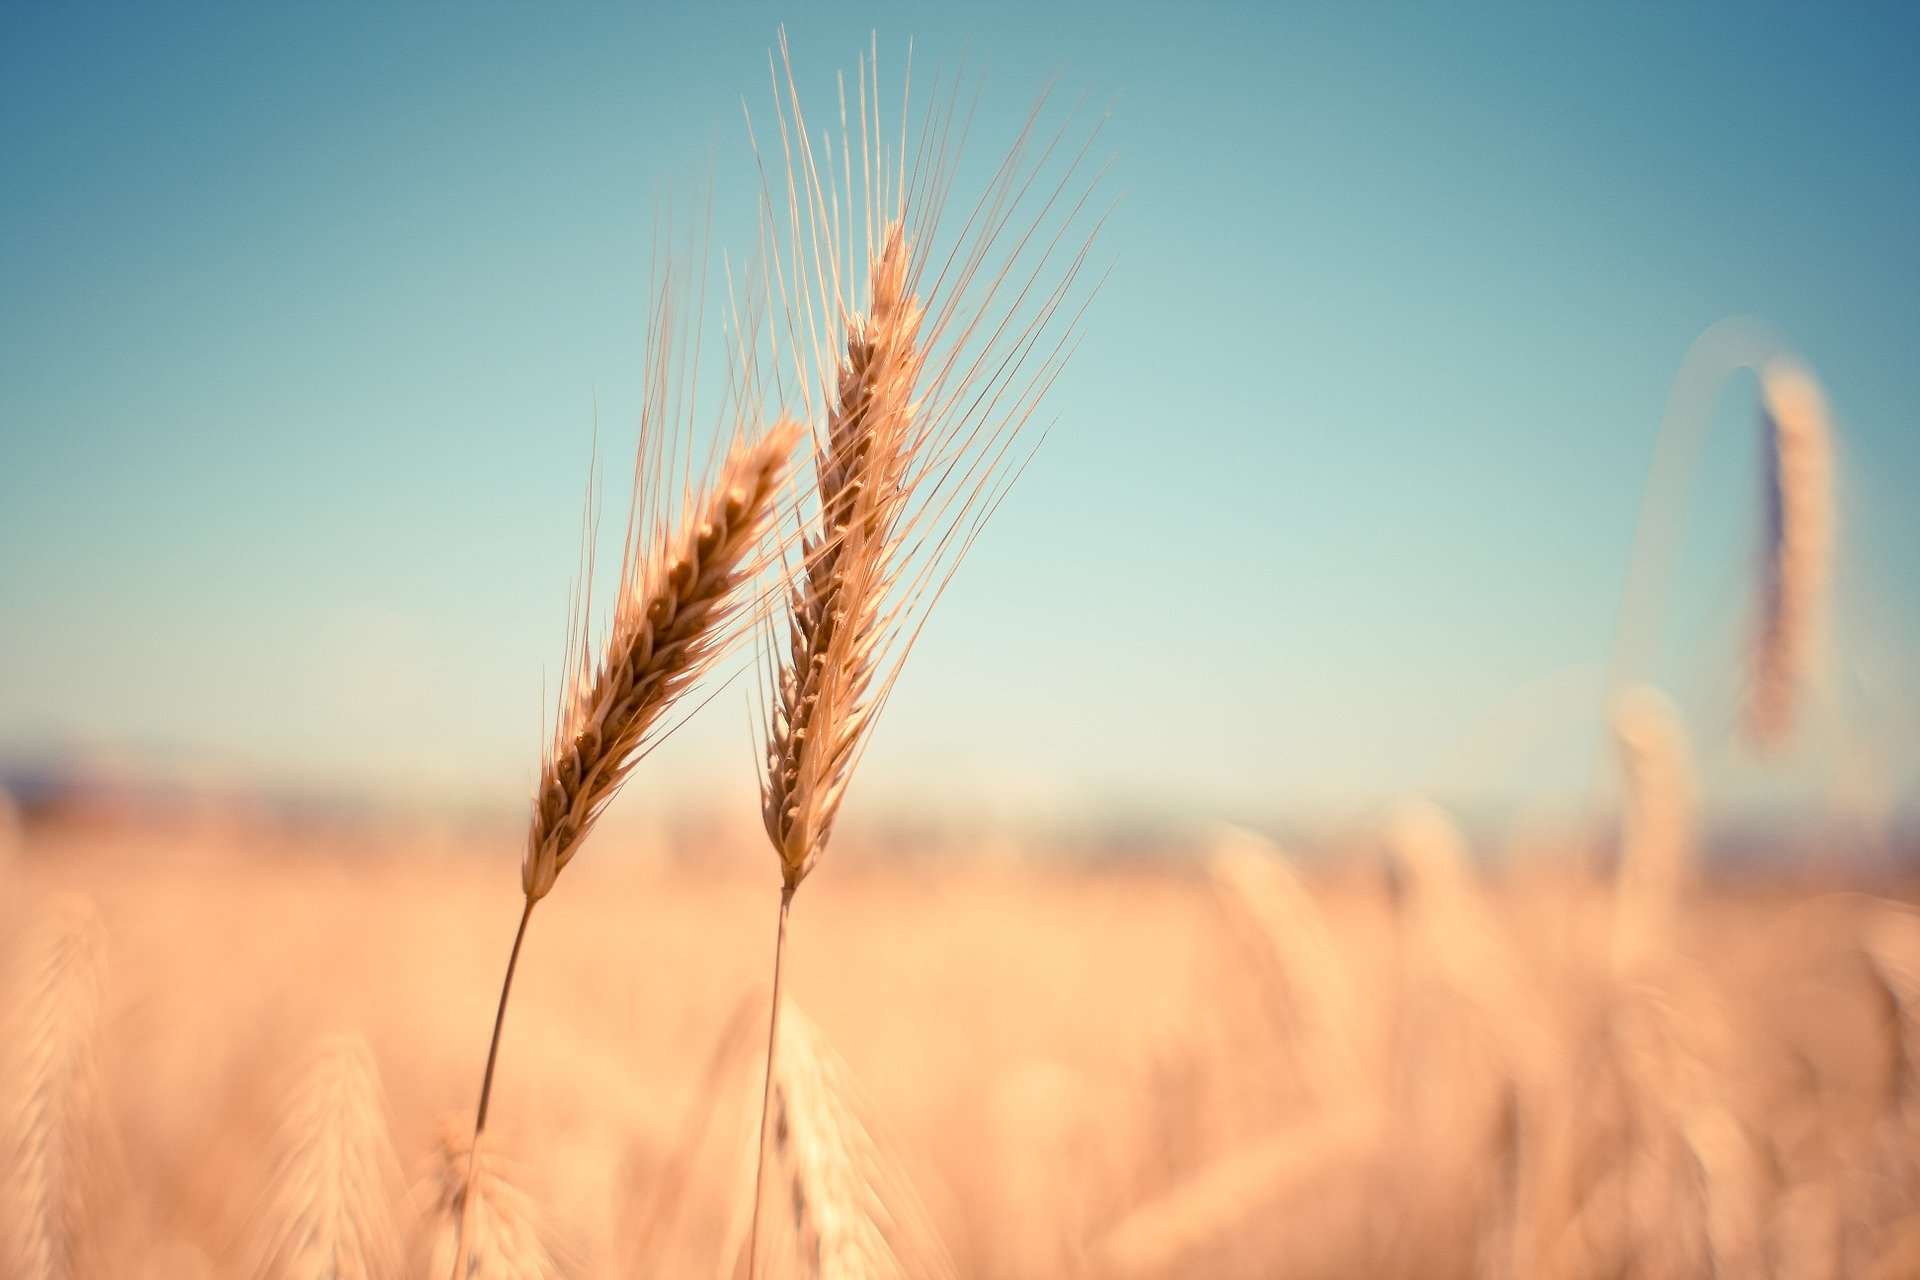 В Тамбовской области собрали четыре миллиона тонн зерна